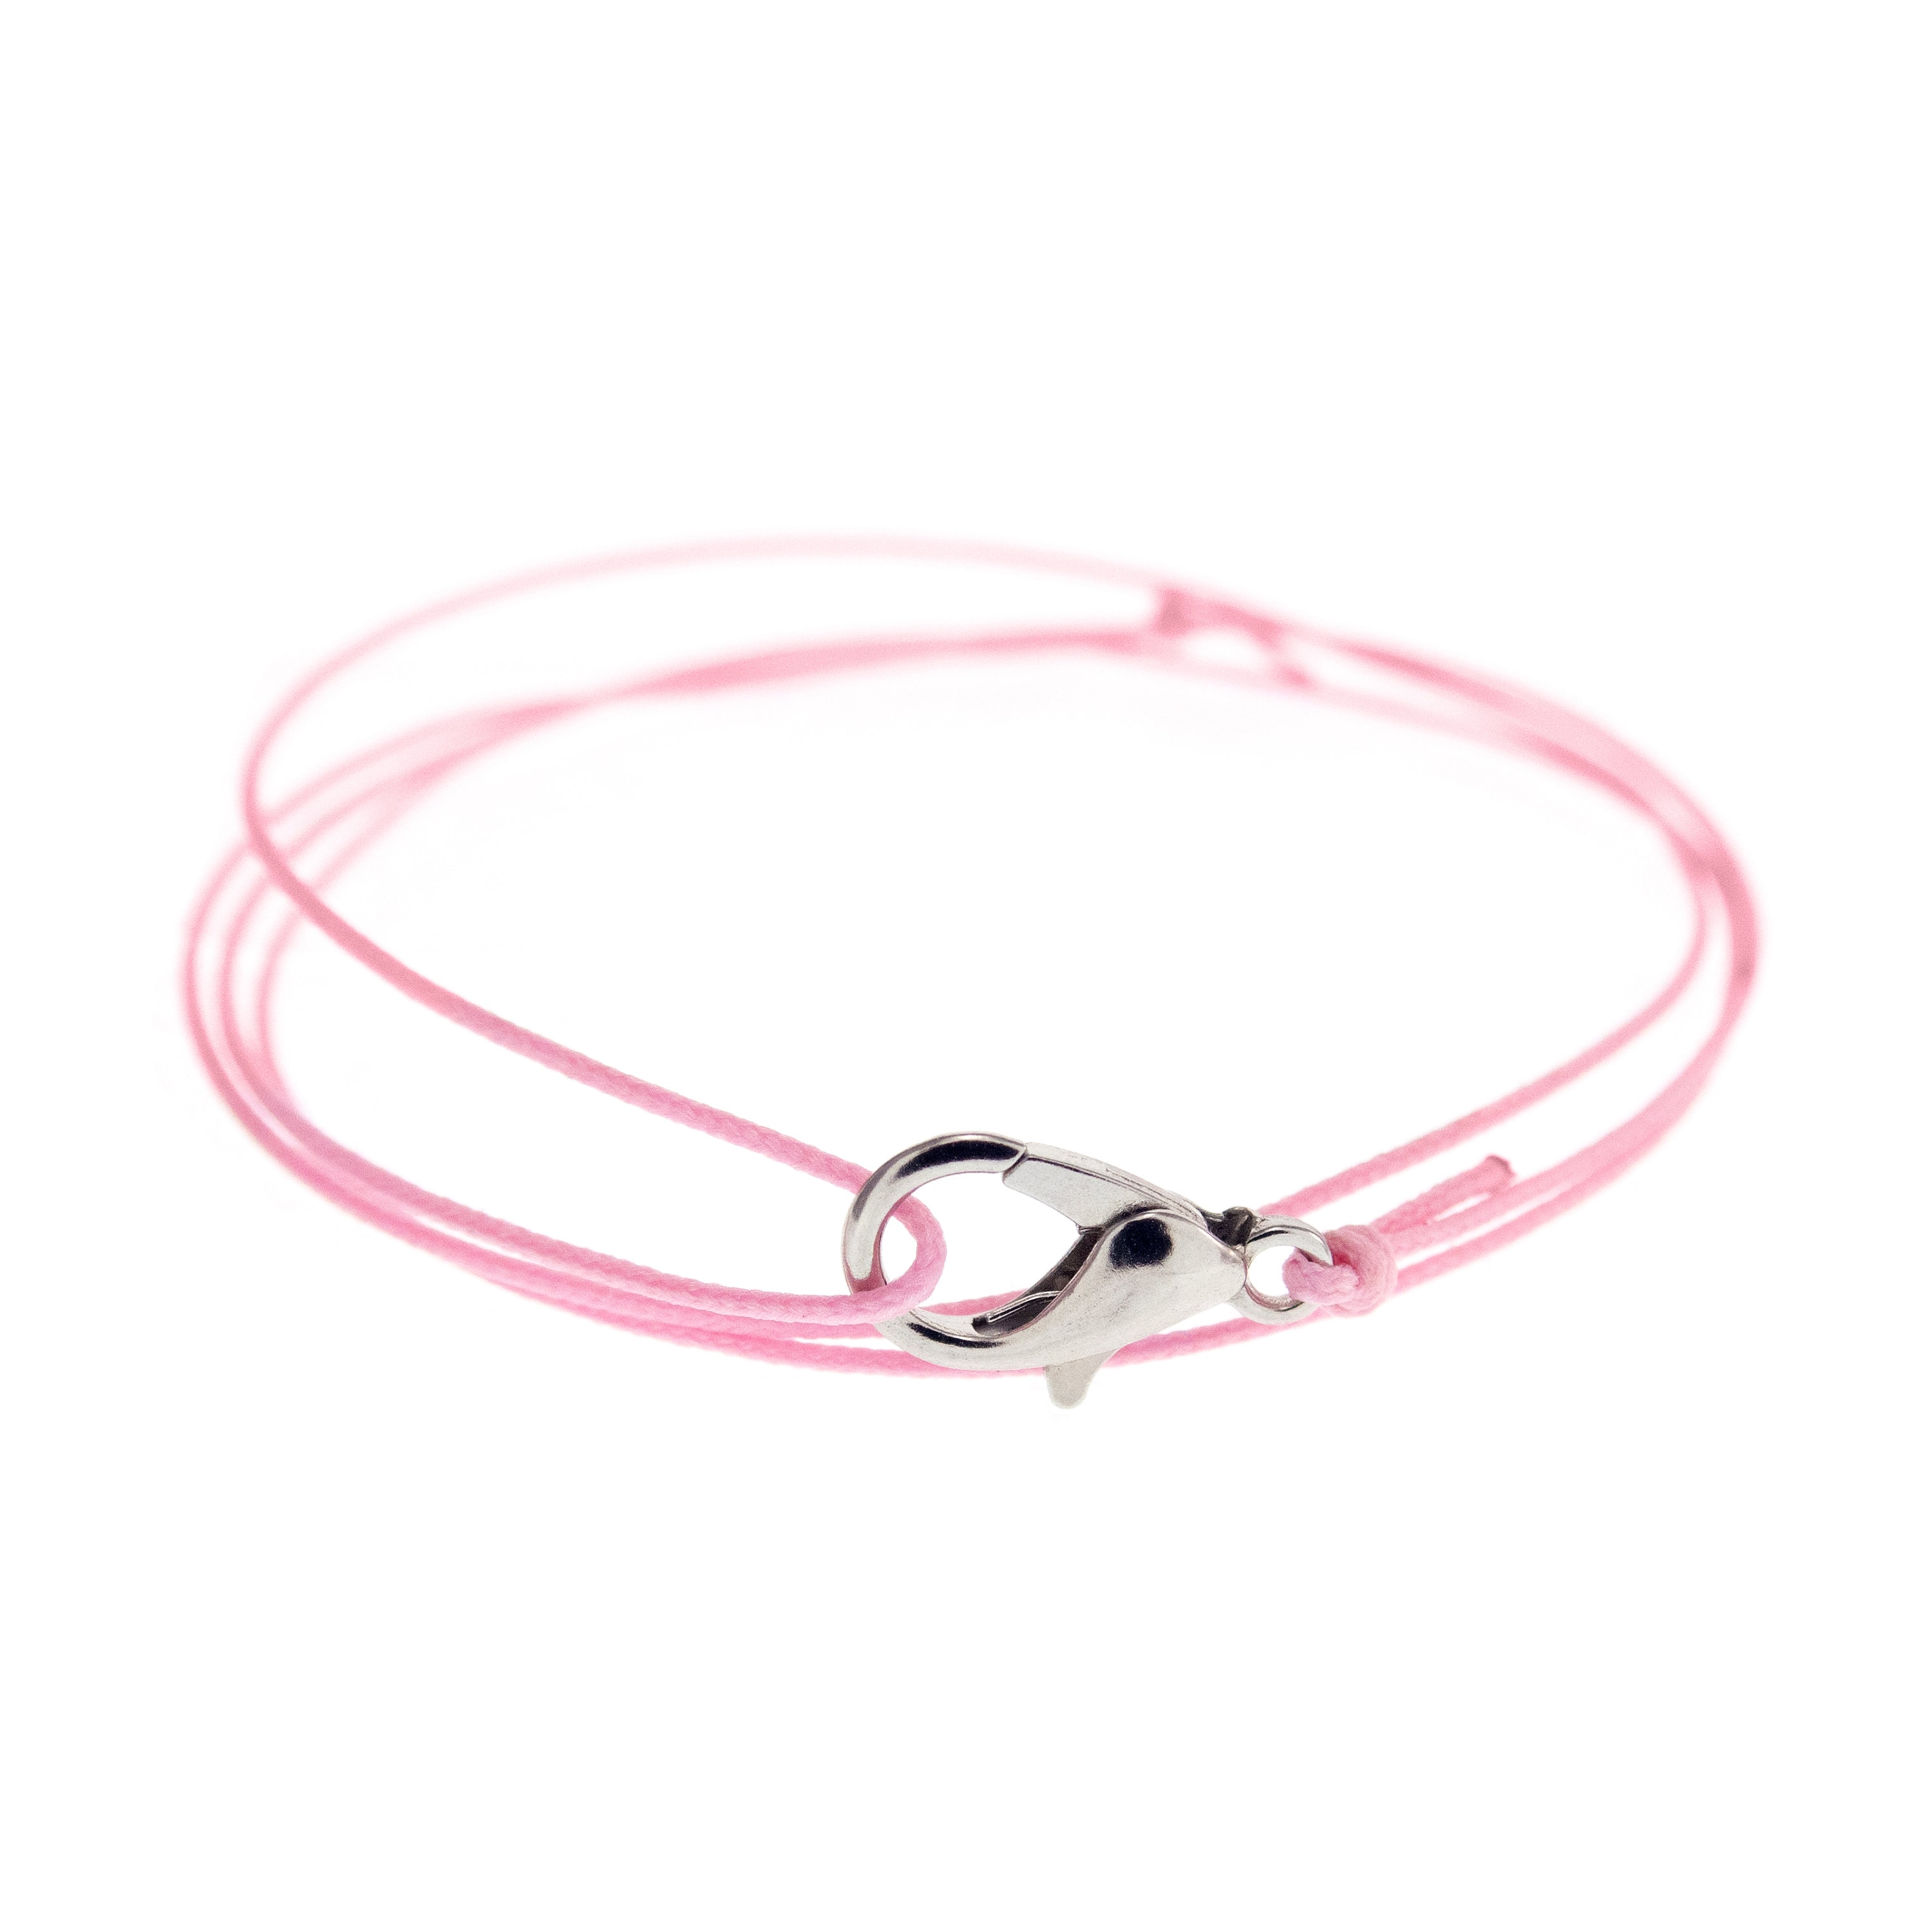 Best Friend Couple Bracelet. Unique String Bracelet Gift for Adults